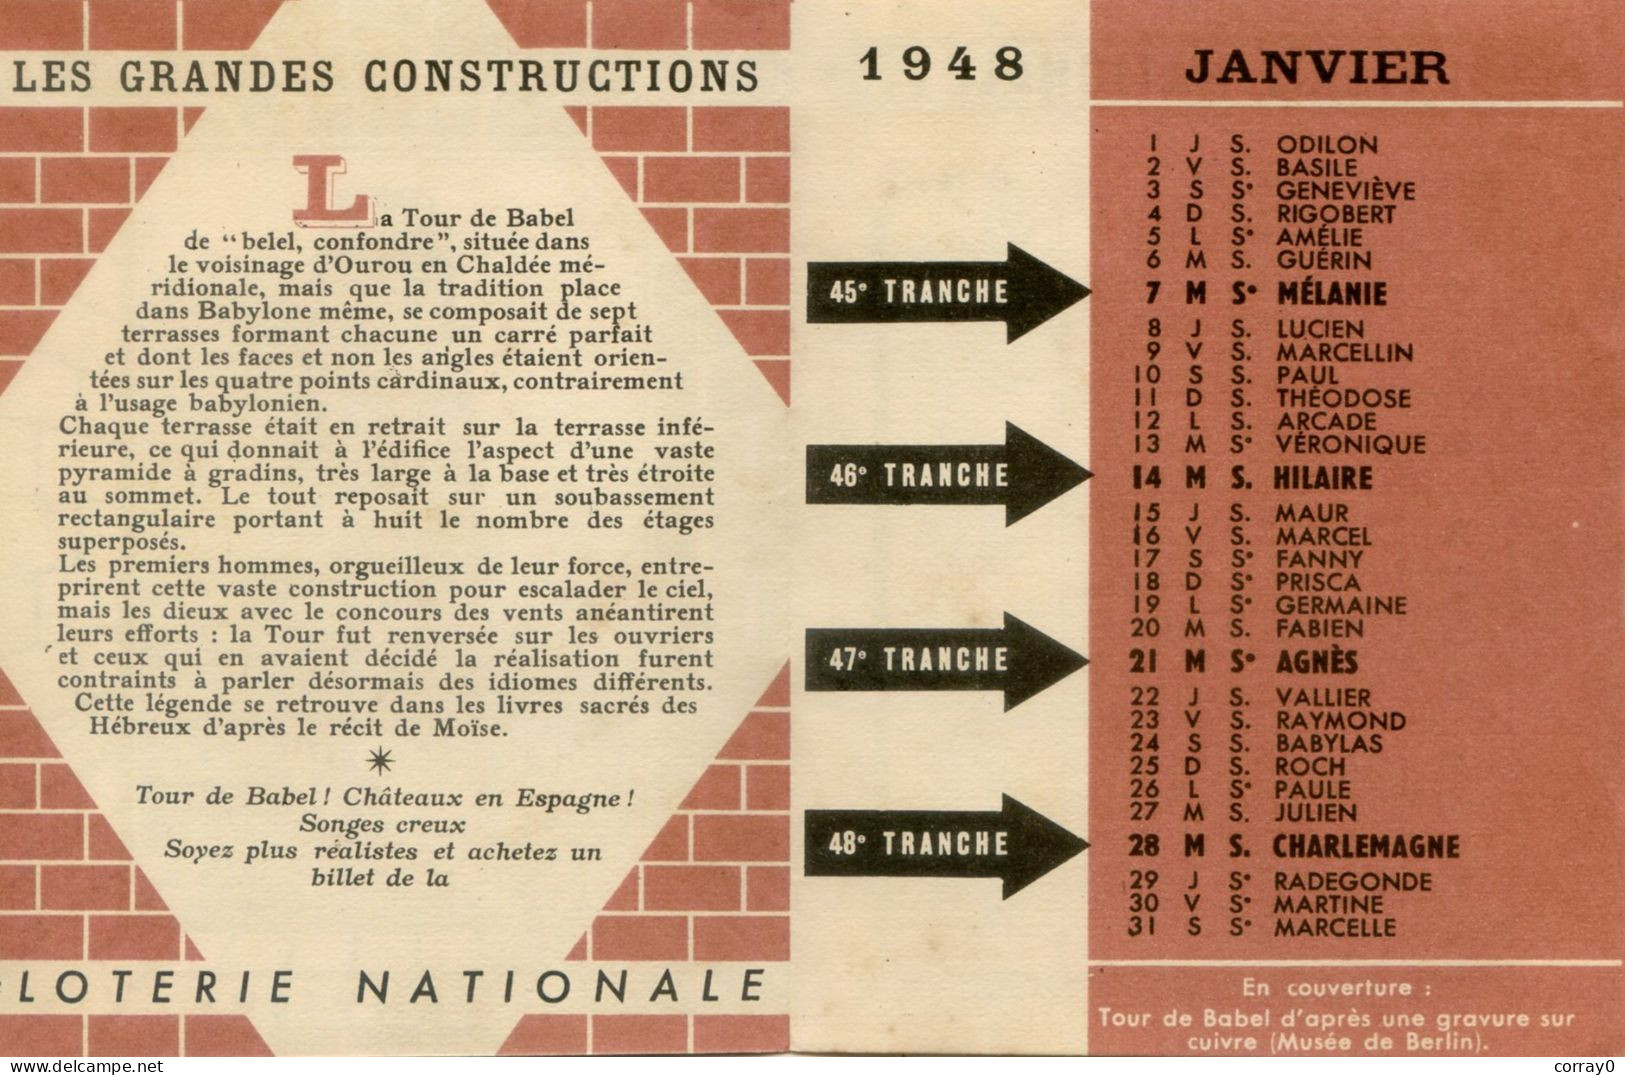 LOTERIE NATIONALE. Calendrier Janvier 1948 - Billets De Loterie